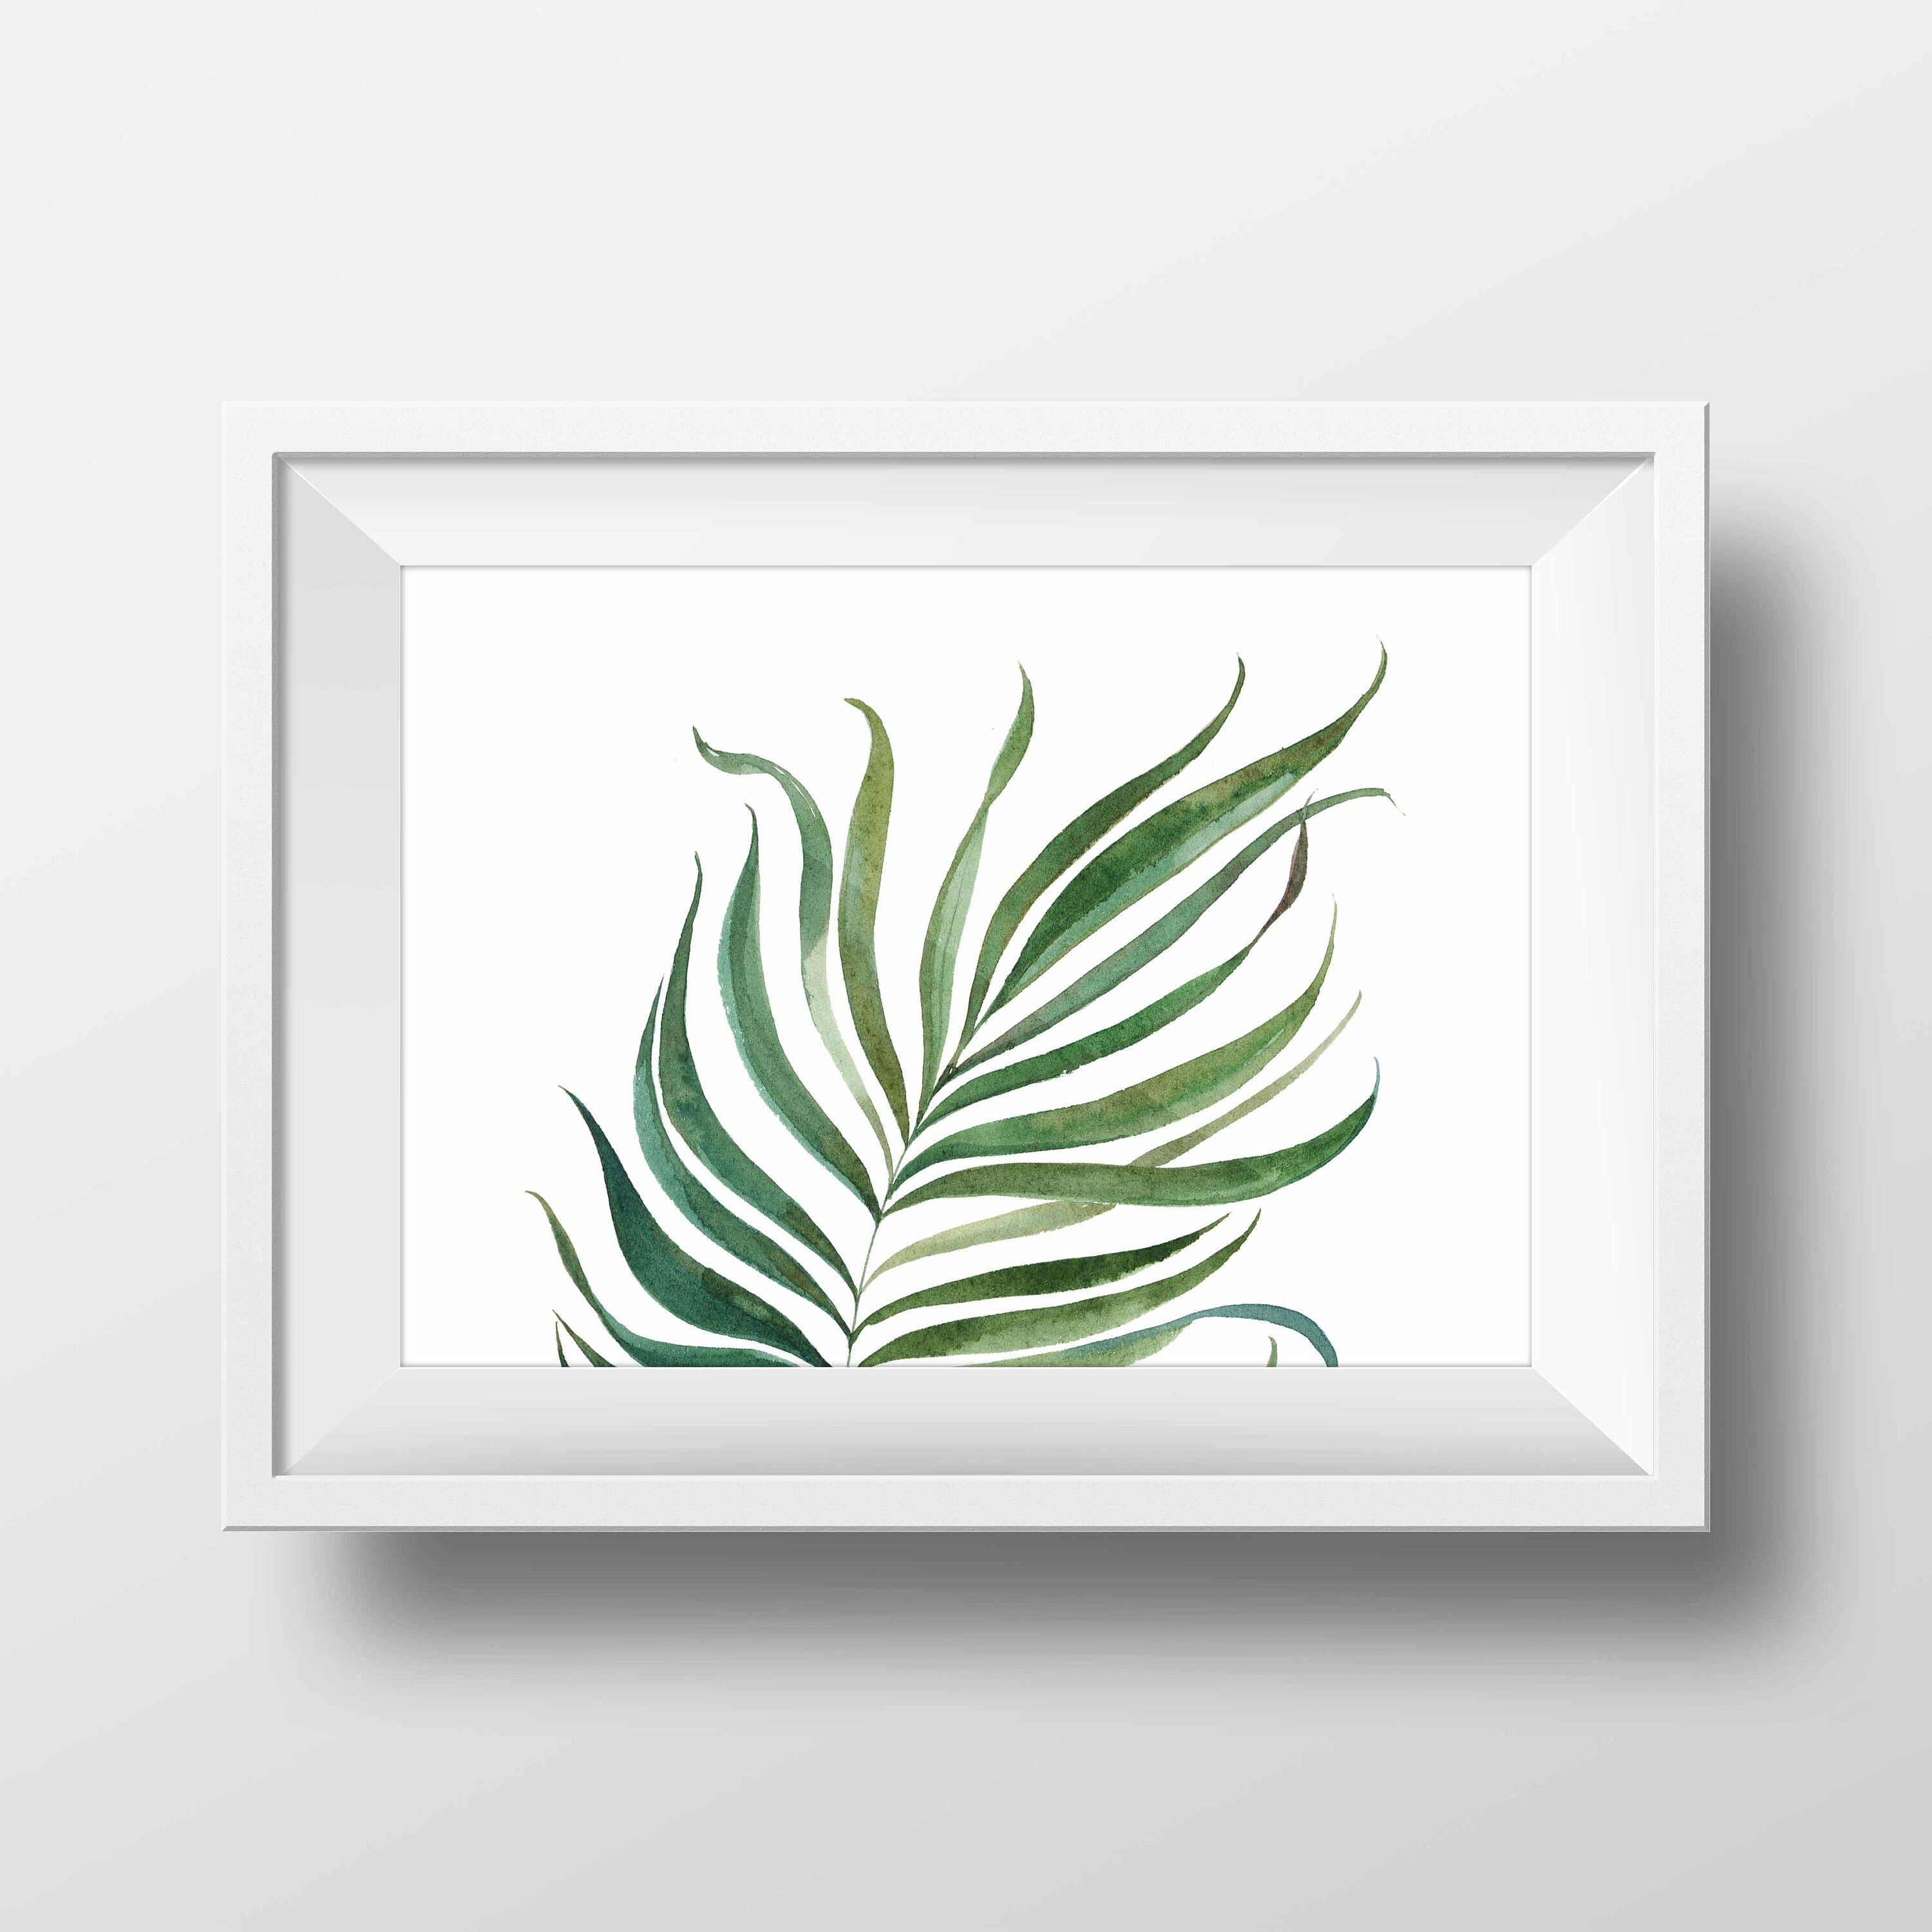 Printable wall artTropical leaf printPalm leaf | Etsy